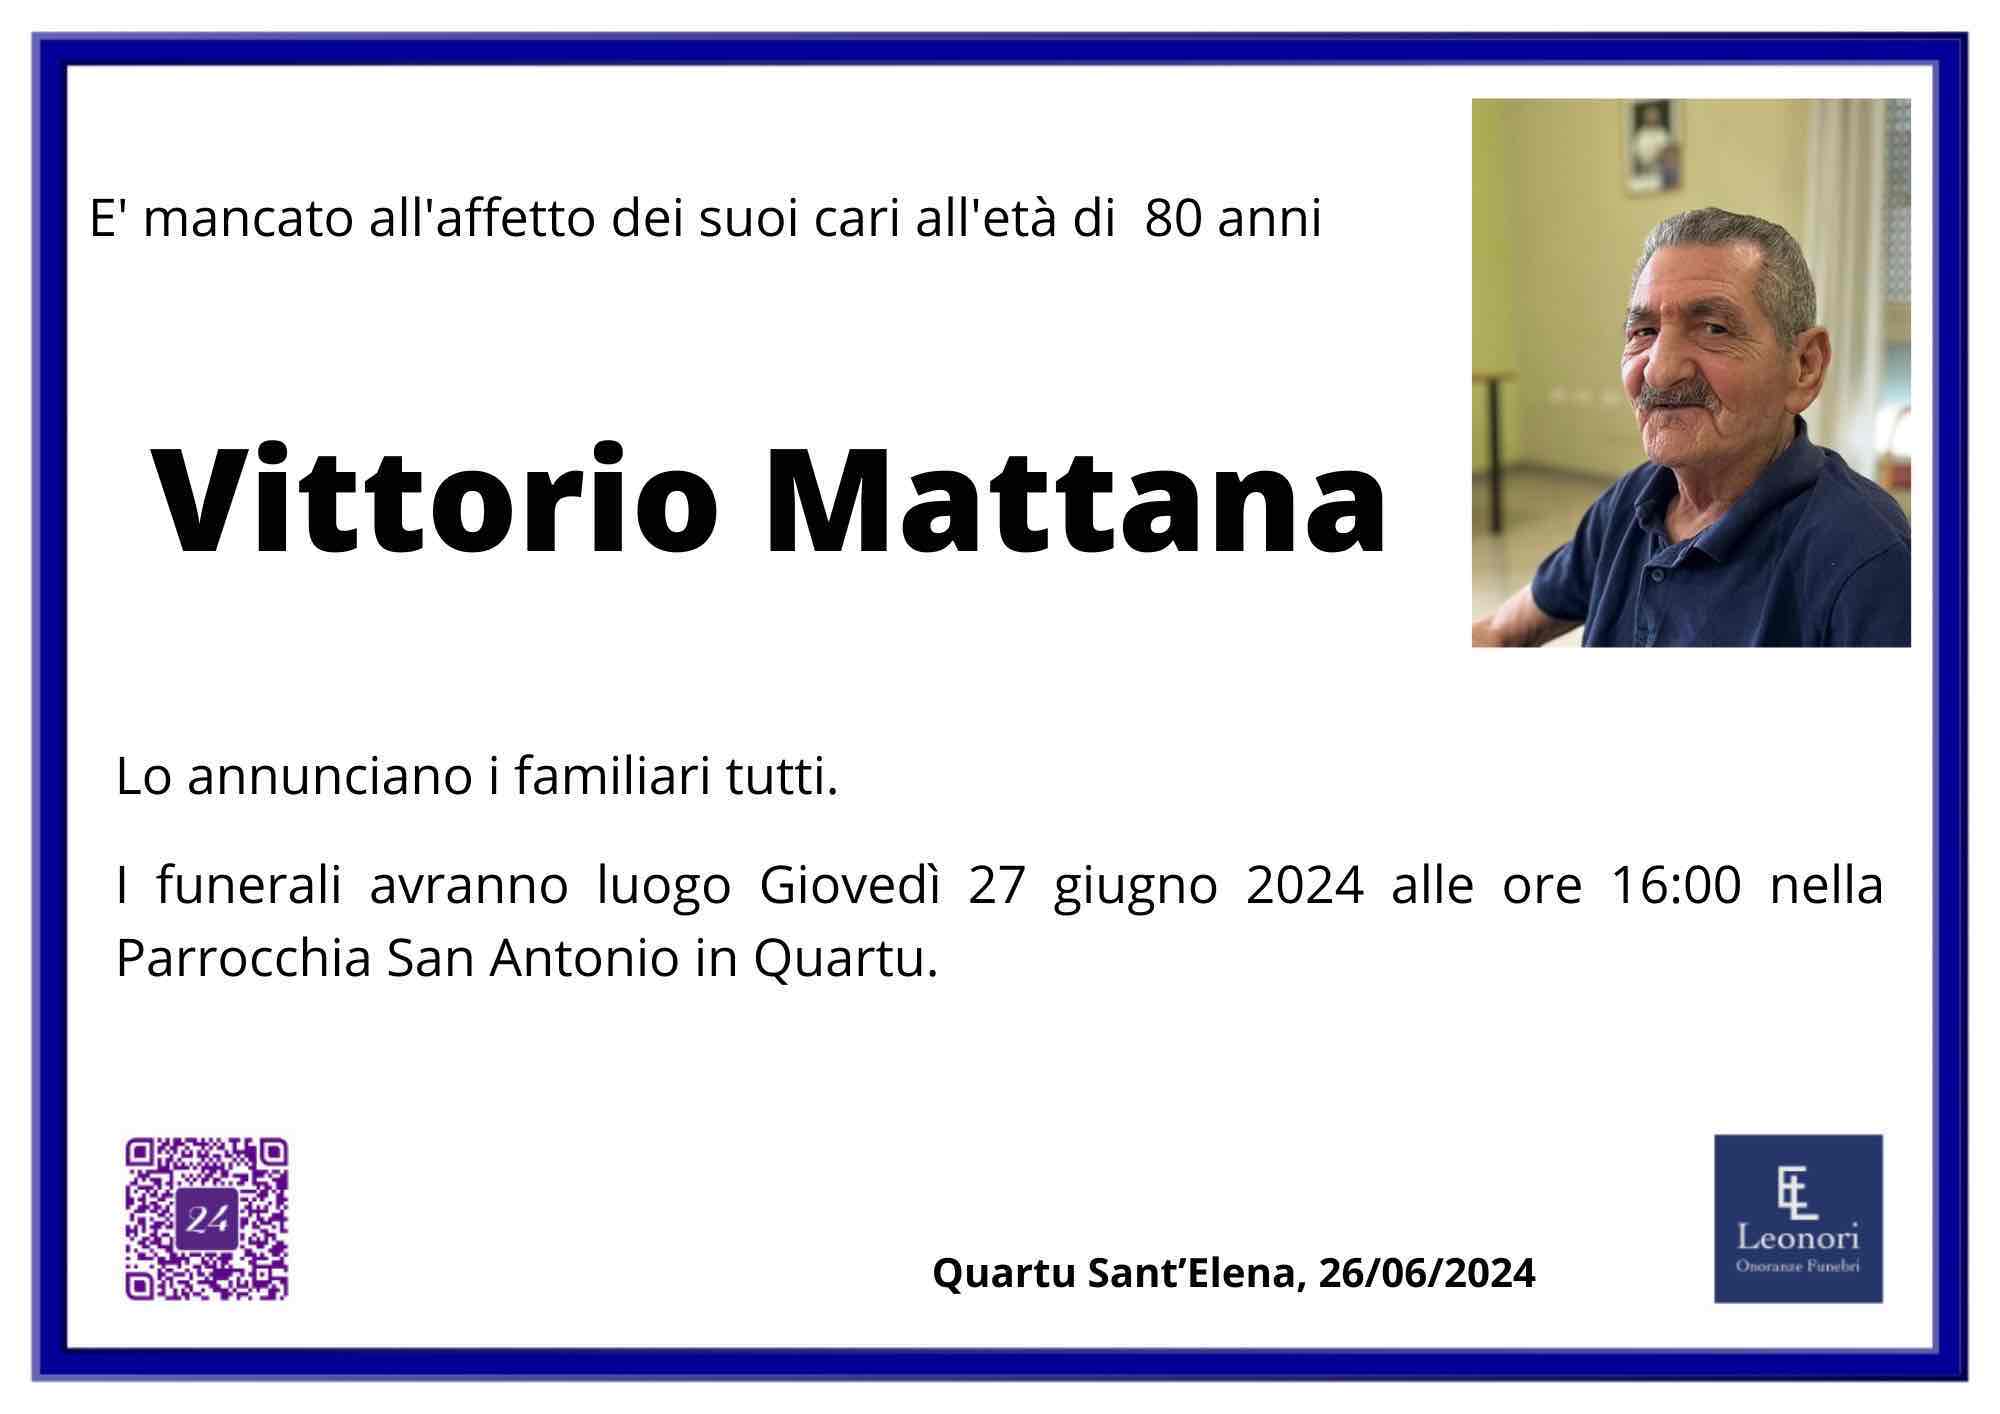 Vittorio Mattana